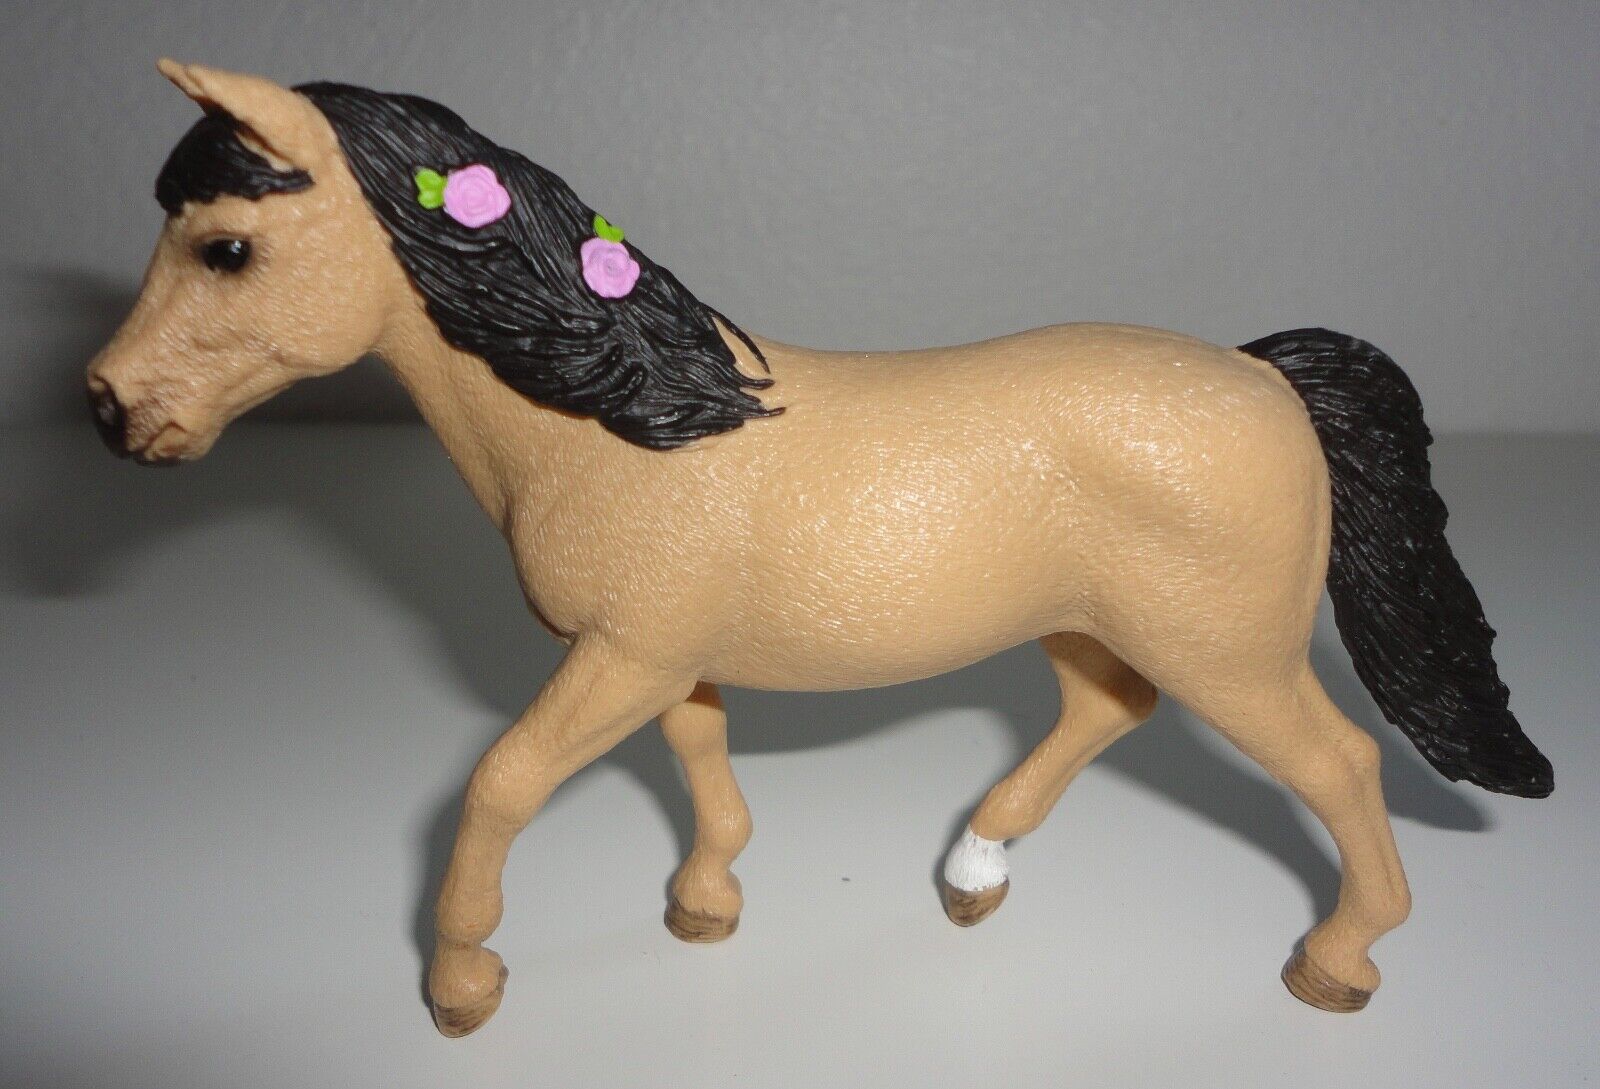 Schleich Connemara Pony Horse w/ Flowers in Mane Figurine 2017